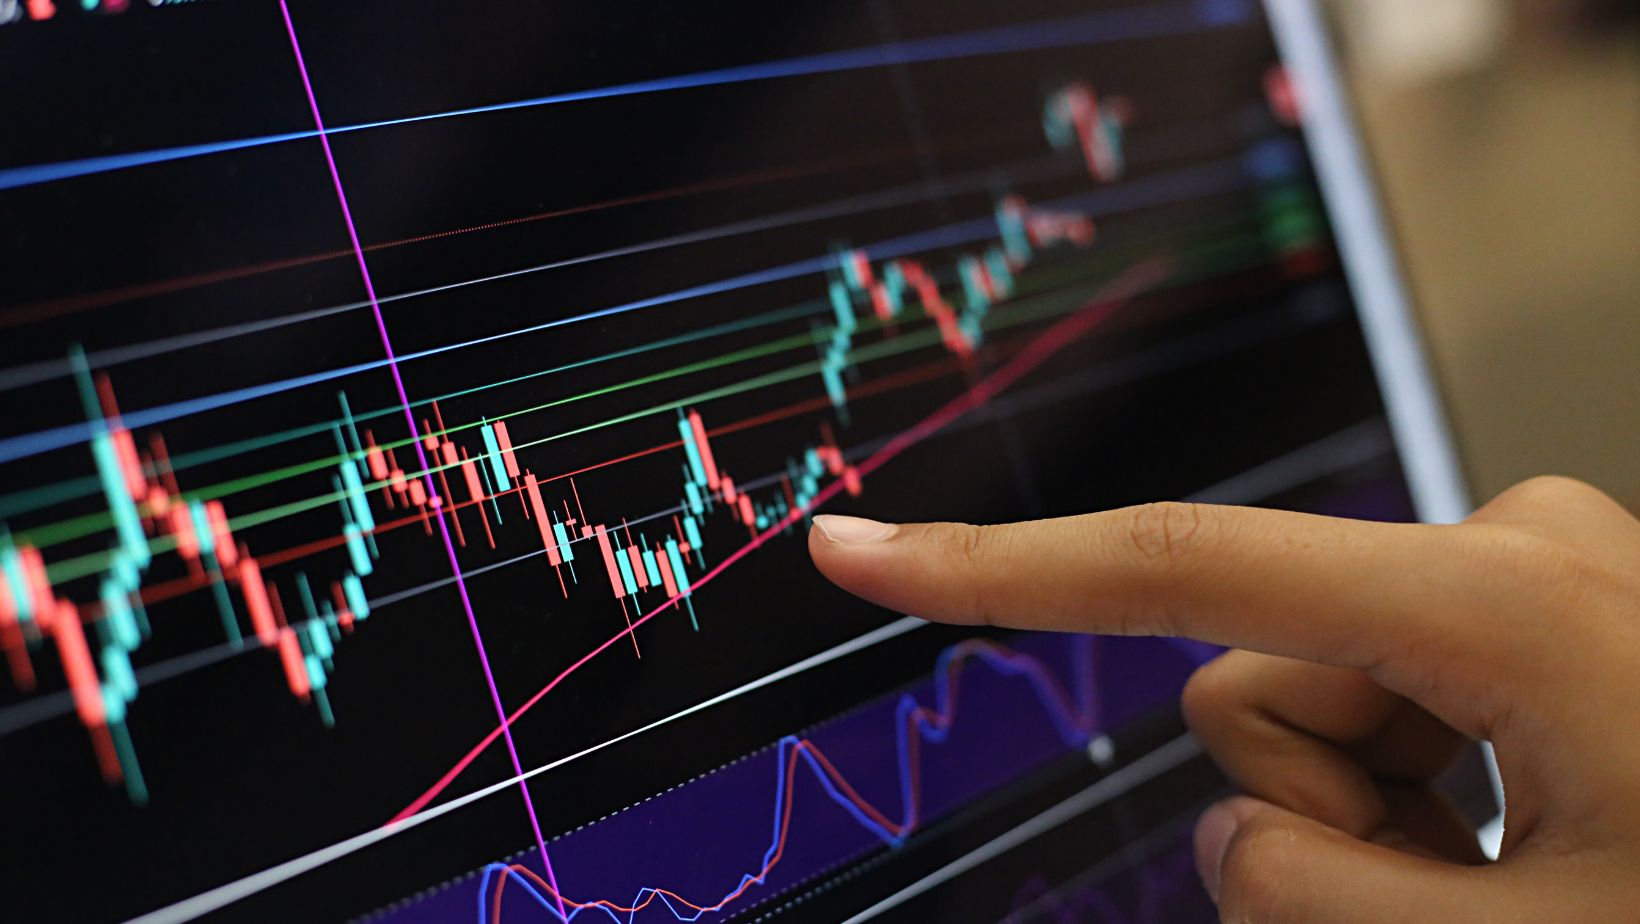 Finger on stock market trading screen